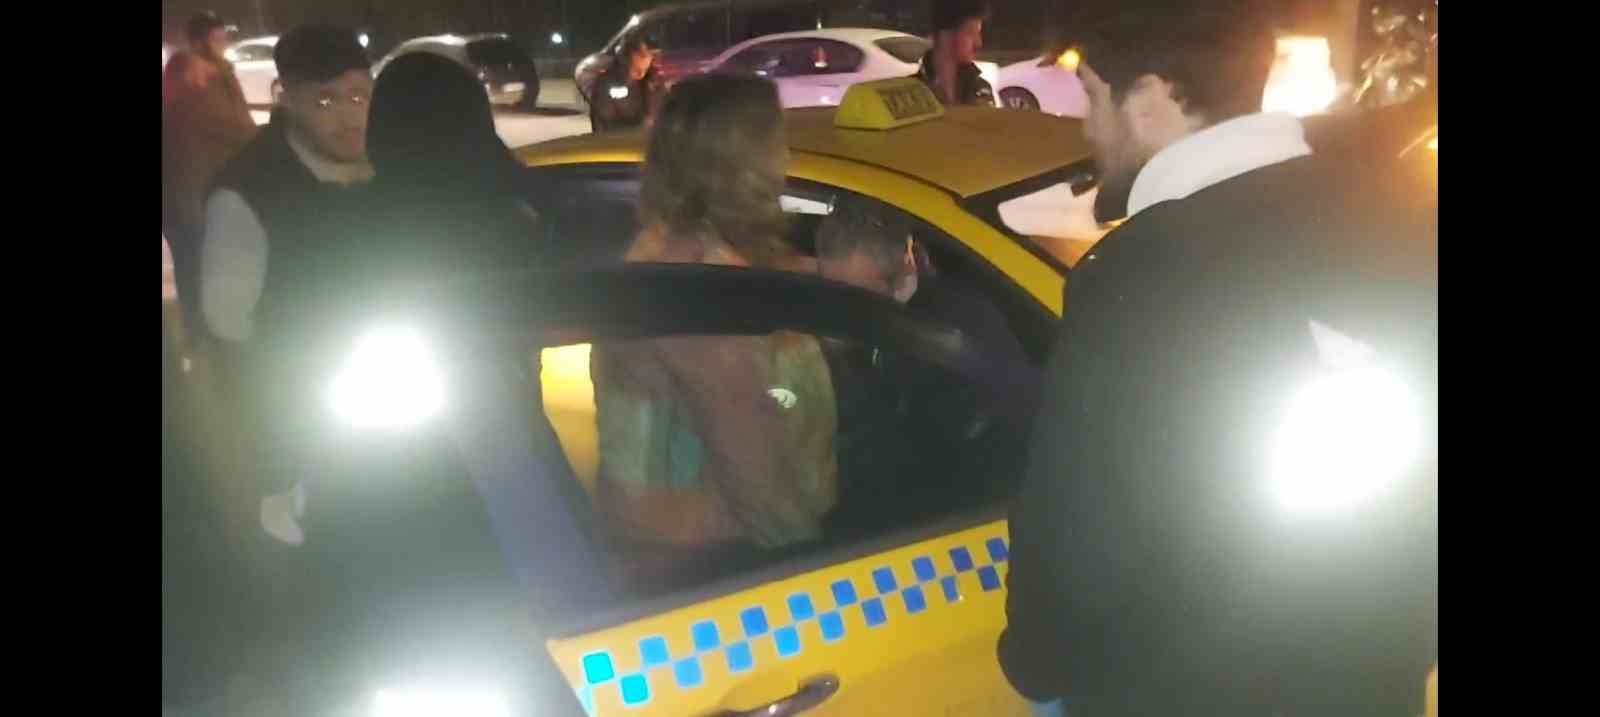 Kadıköy’de kontrolden çıkan taksi, otomobile arkadan çarptı: 1 yaralı
